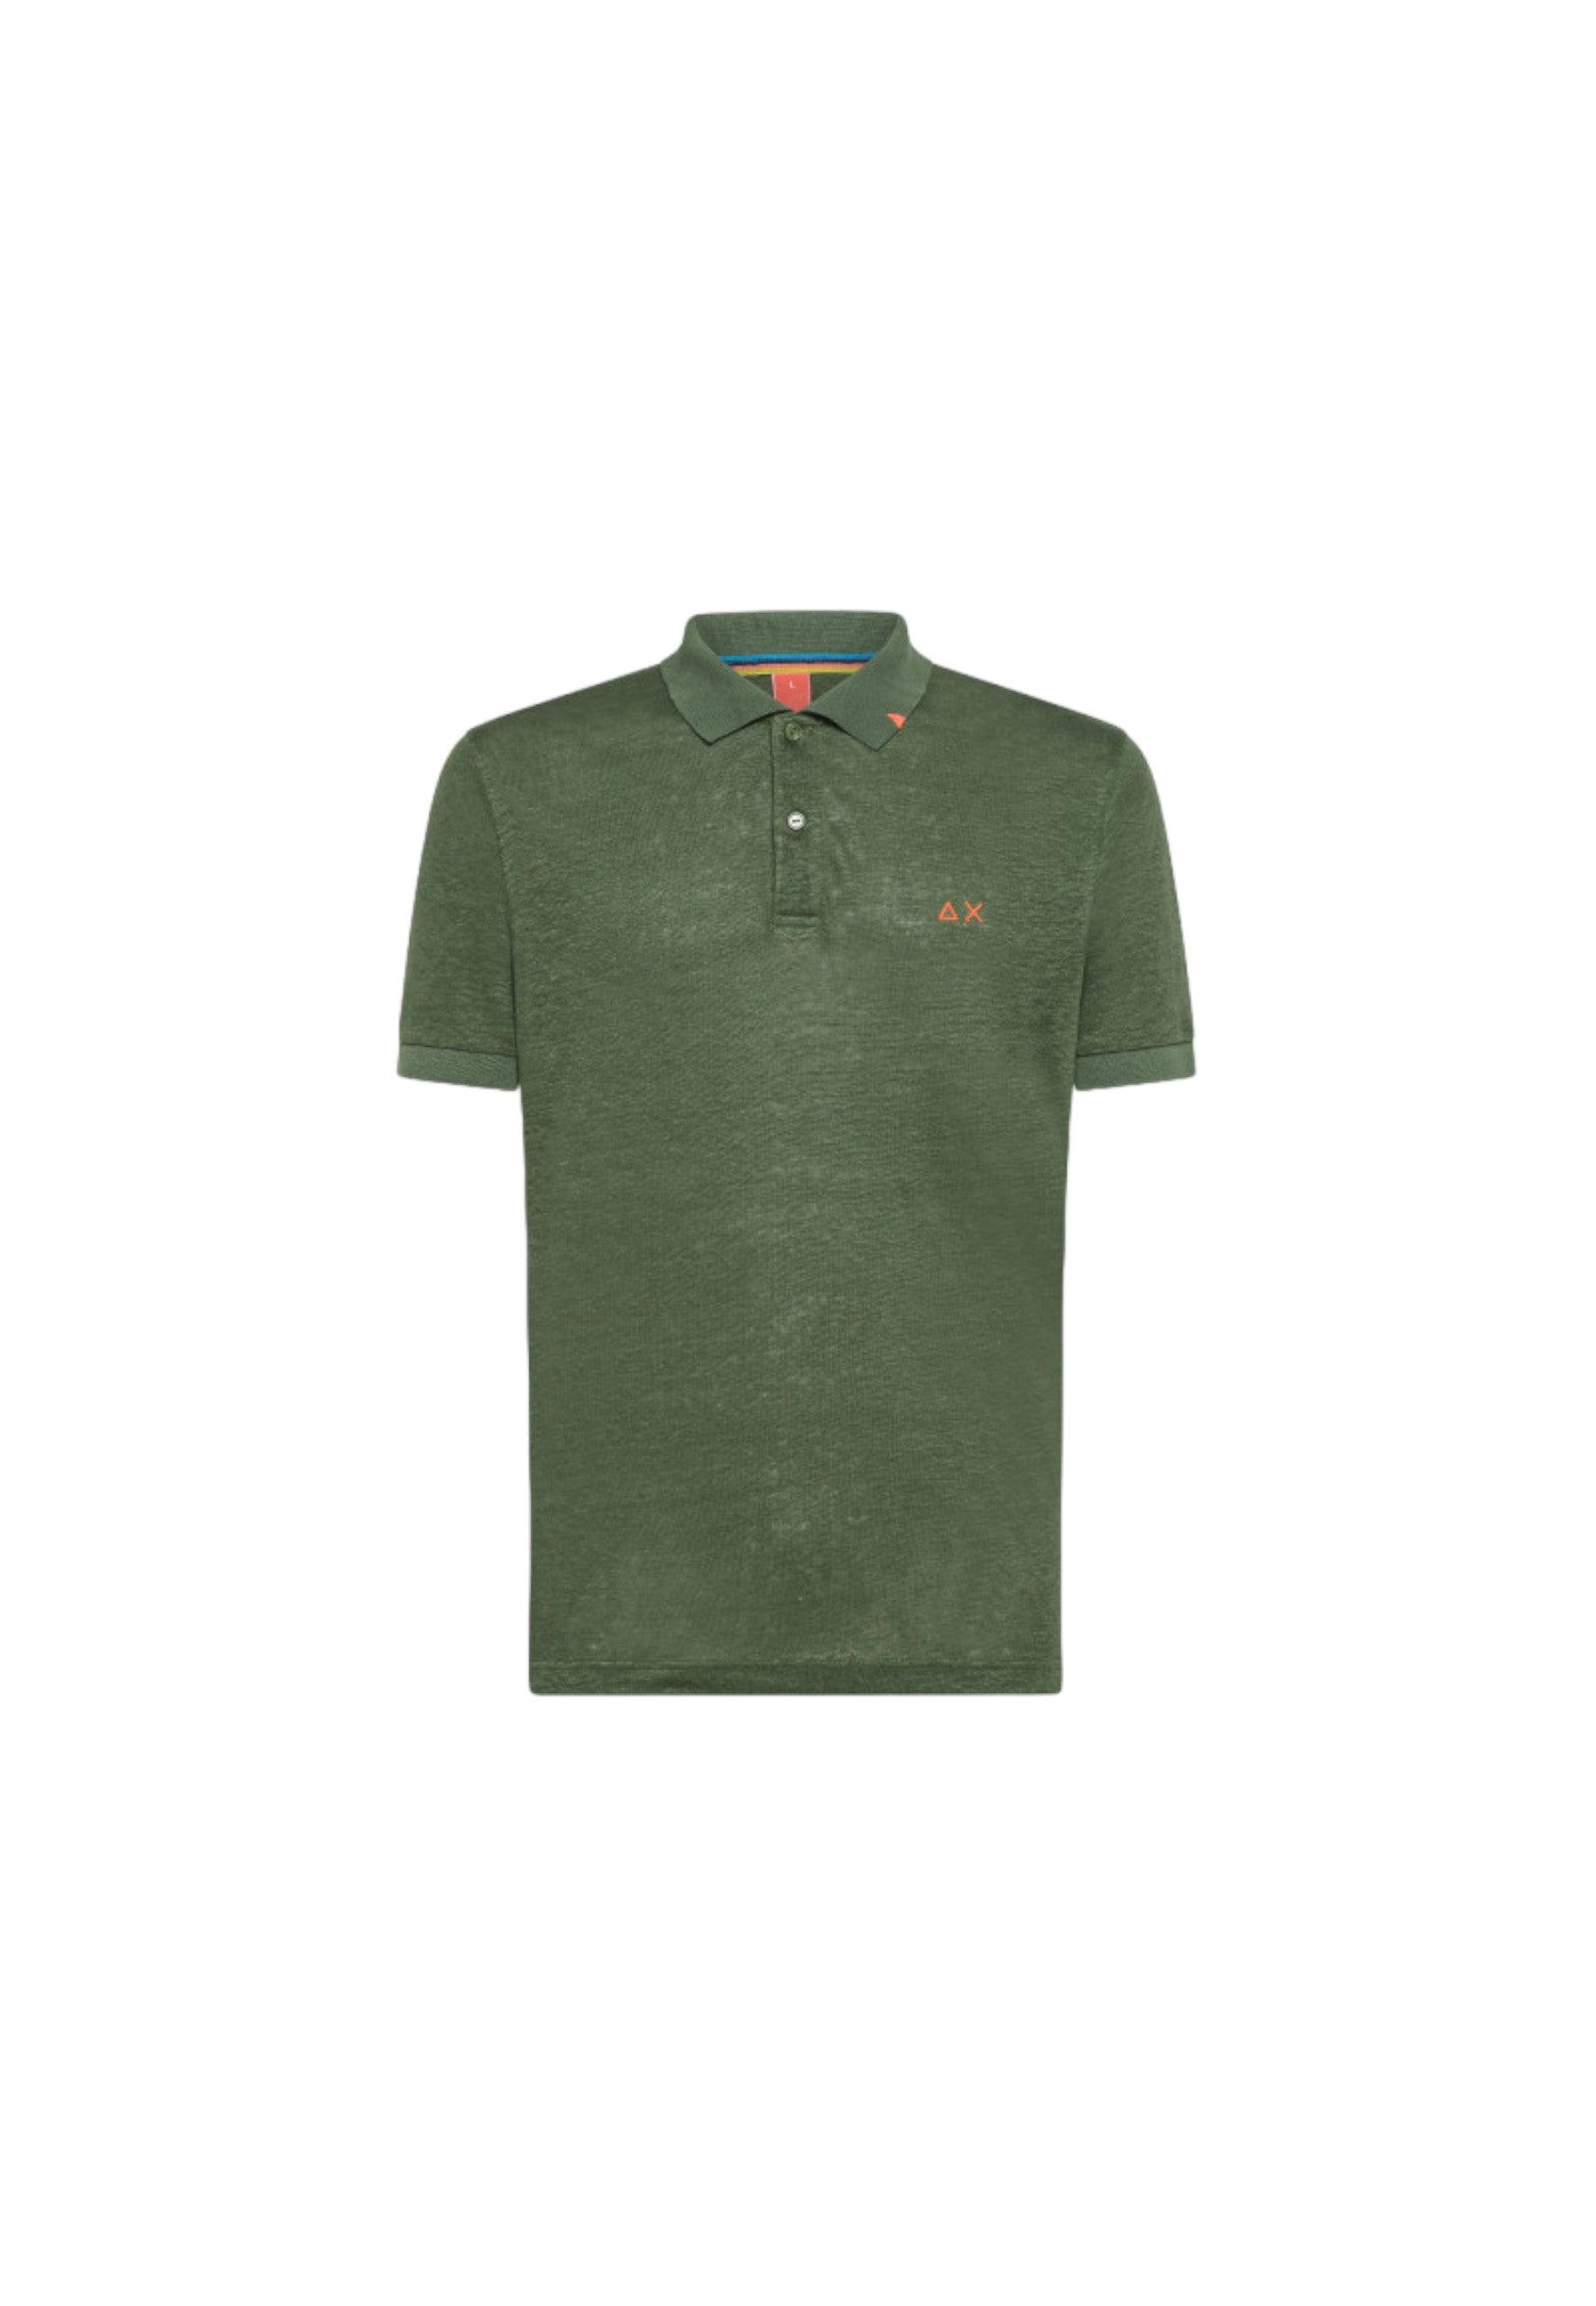 SUN68 Beachwear T-Shirt Polo Maglietta Verde Scuro A34144 - Sandrini Calzature e Abbigliamento